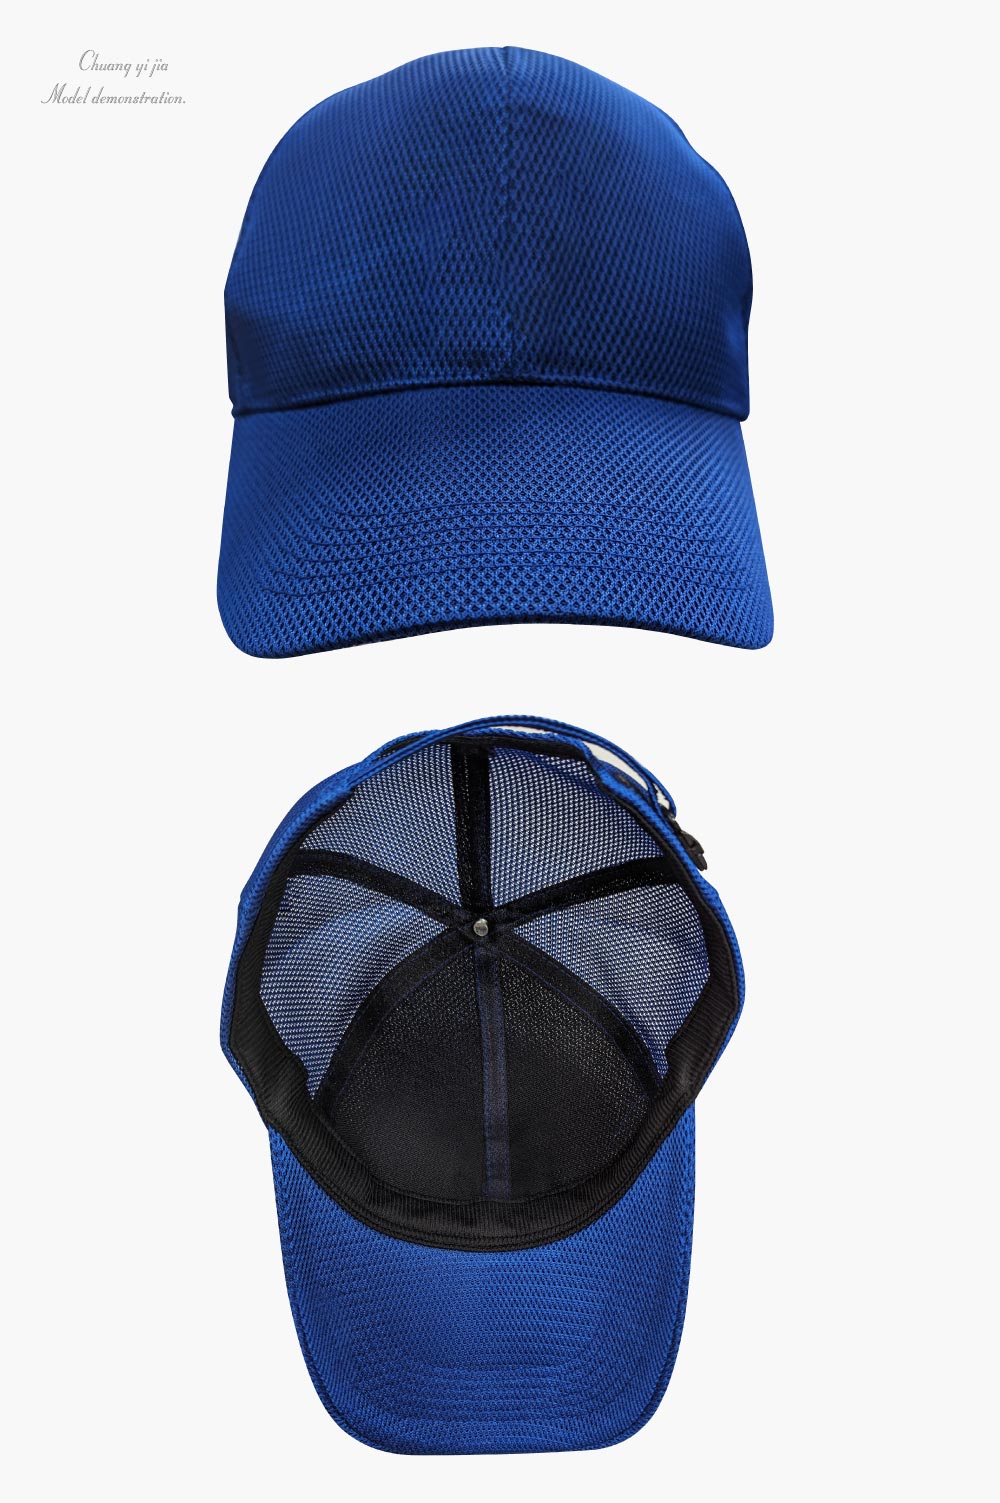 創意家團體服-六片帽 尼龍網布 訂製 寶藍